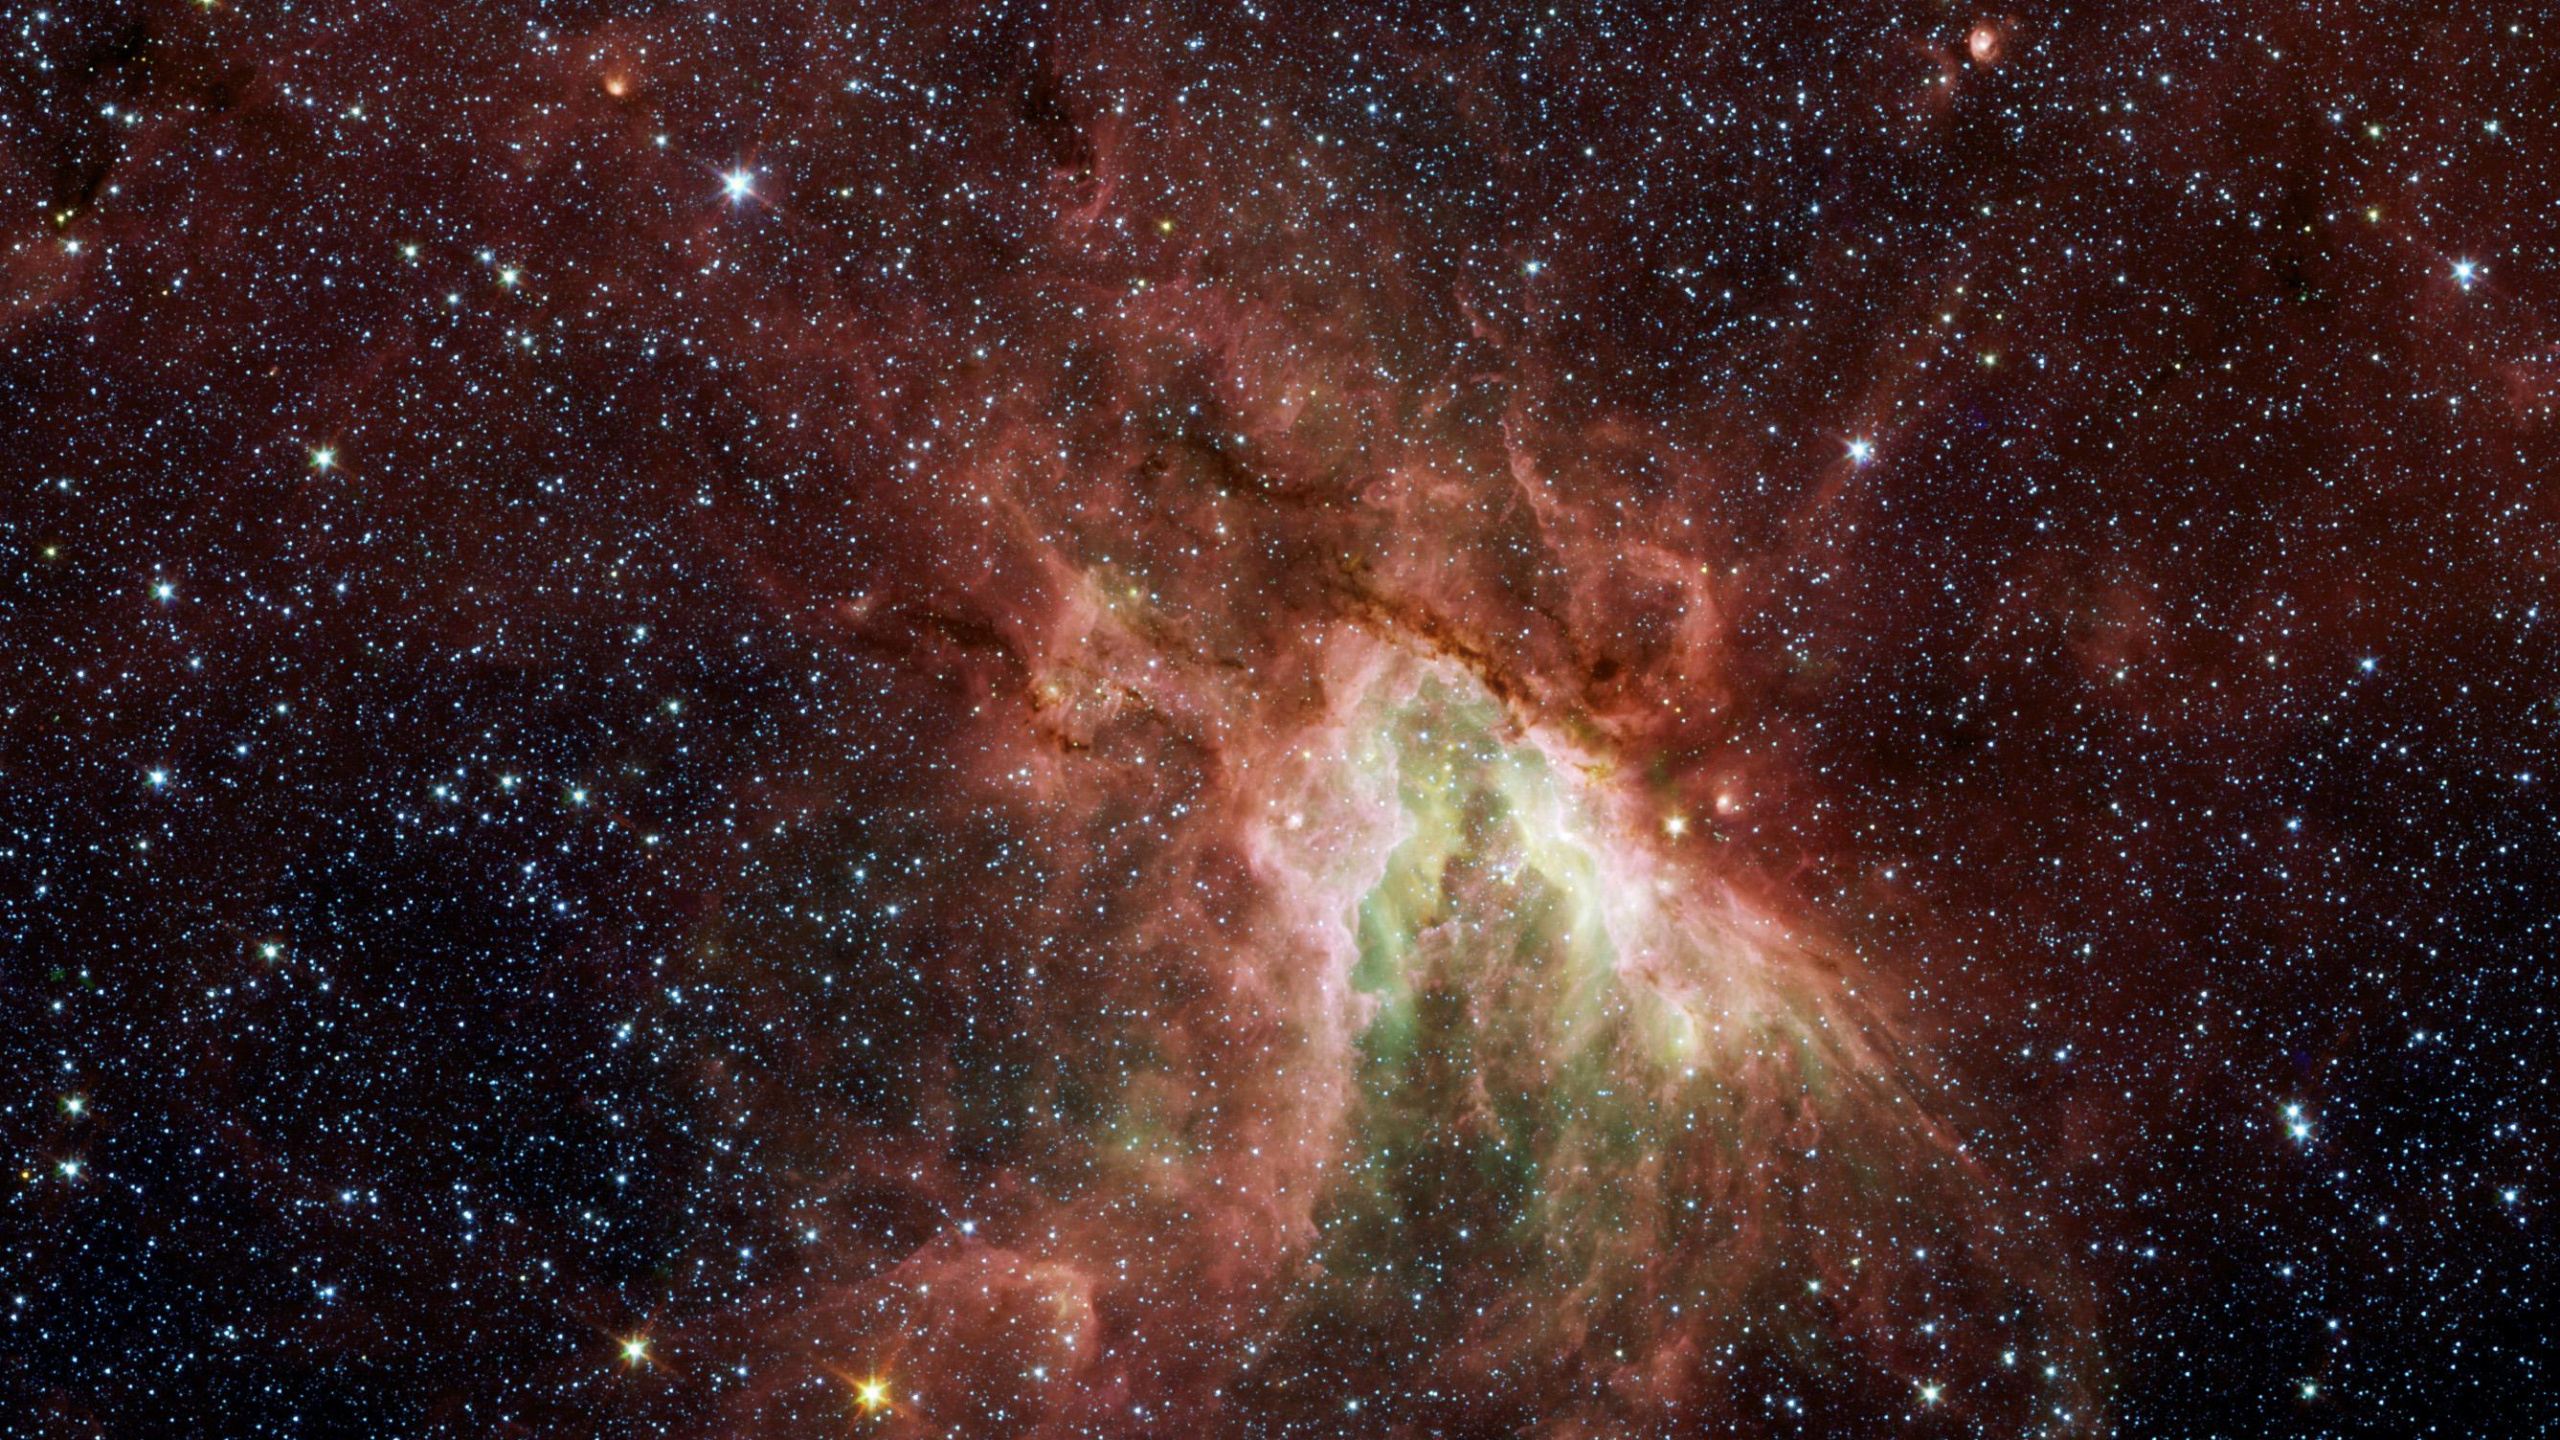 明星, 斯皮策太空望远镜, 性质, 宇宙, 天文学对象 壁纸 2560x1440 允许